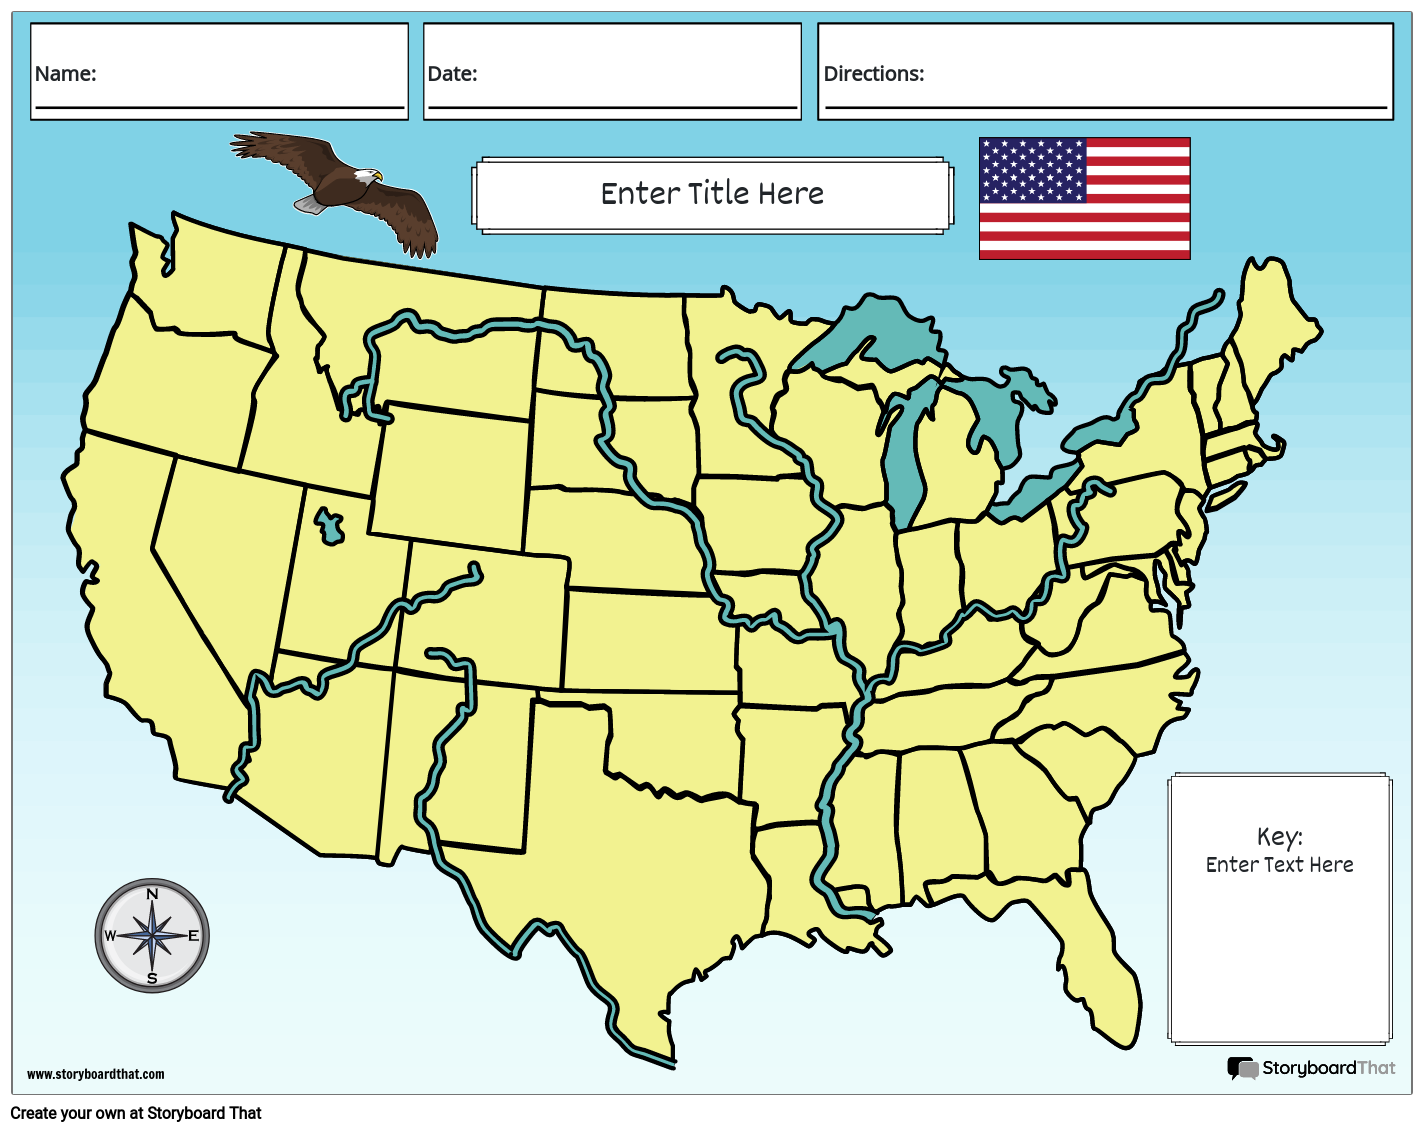 الجغرافيا الطبيعية للولايات المتحدة الأمريكية